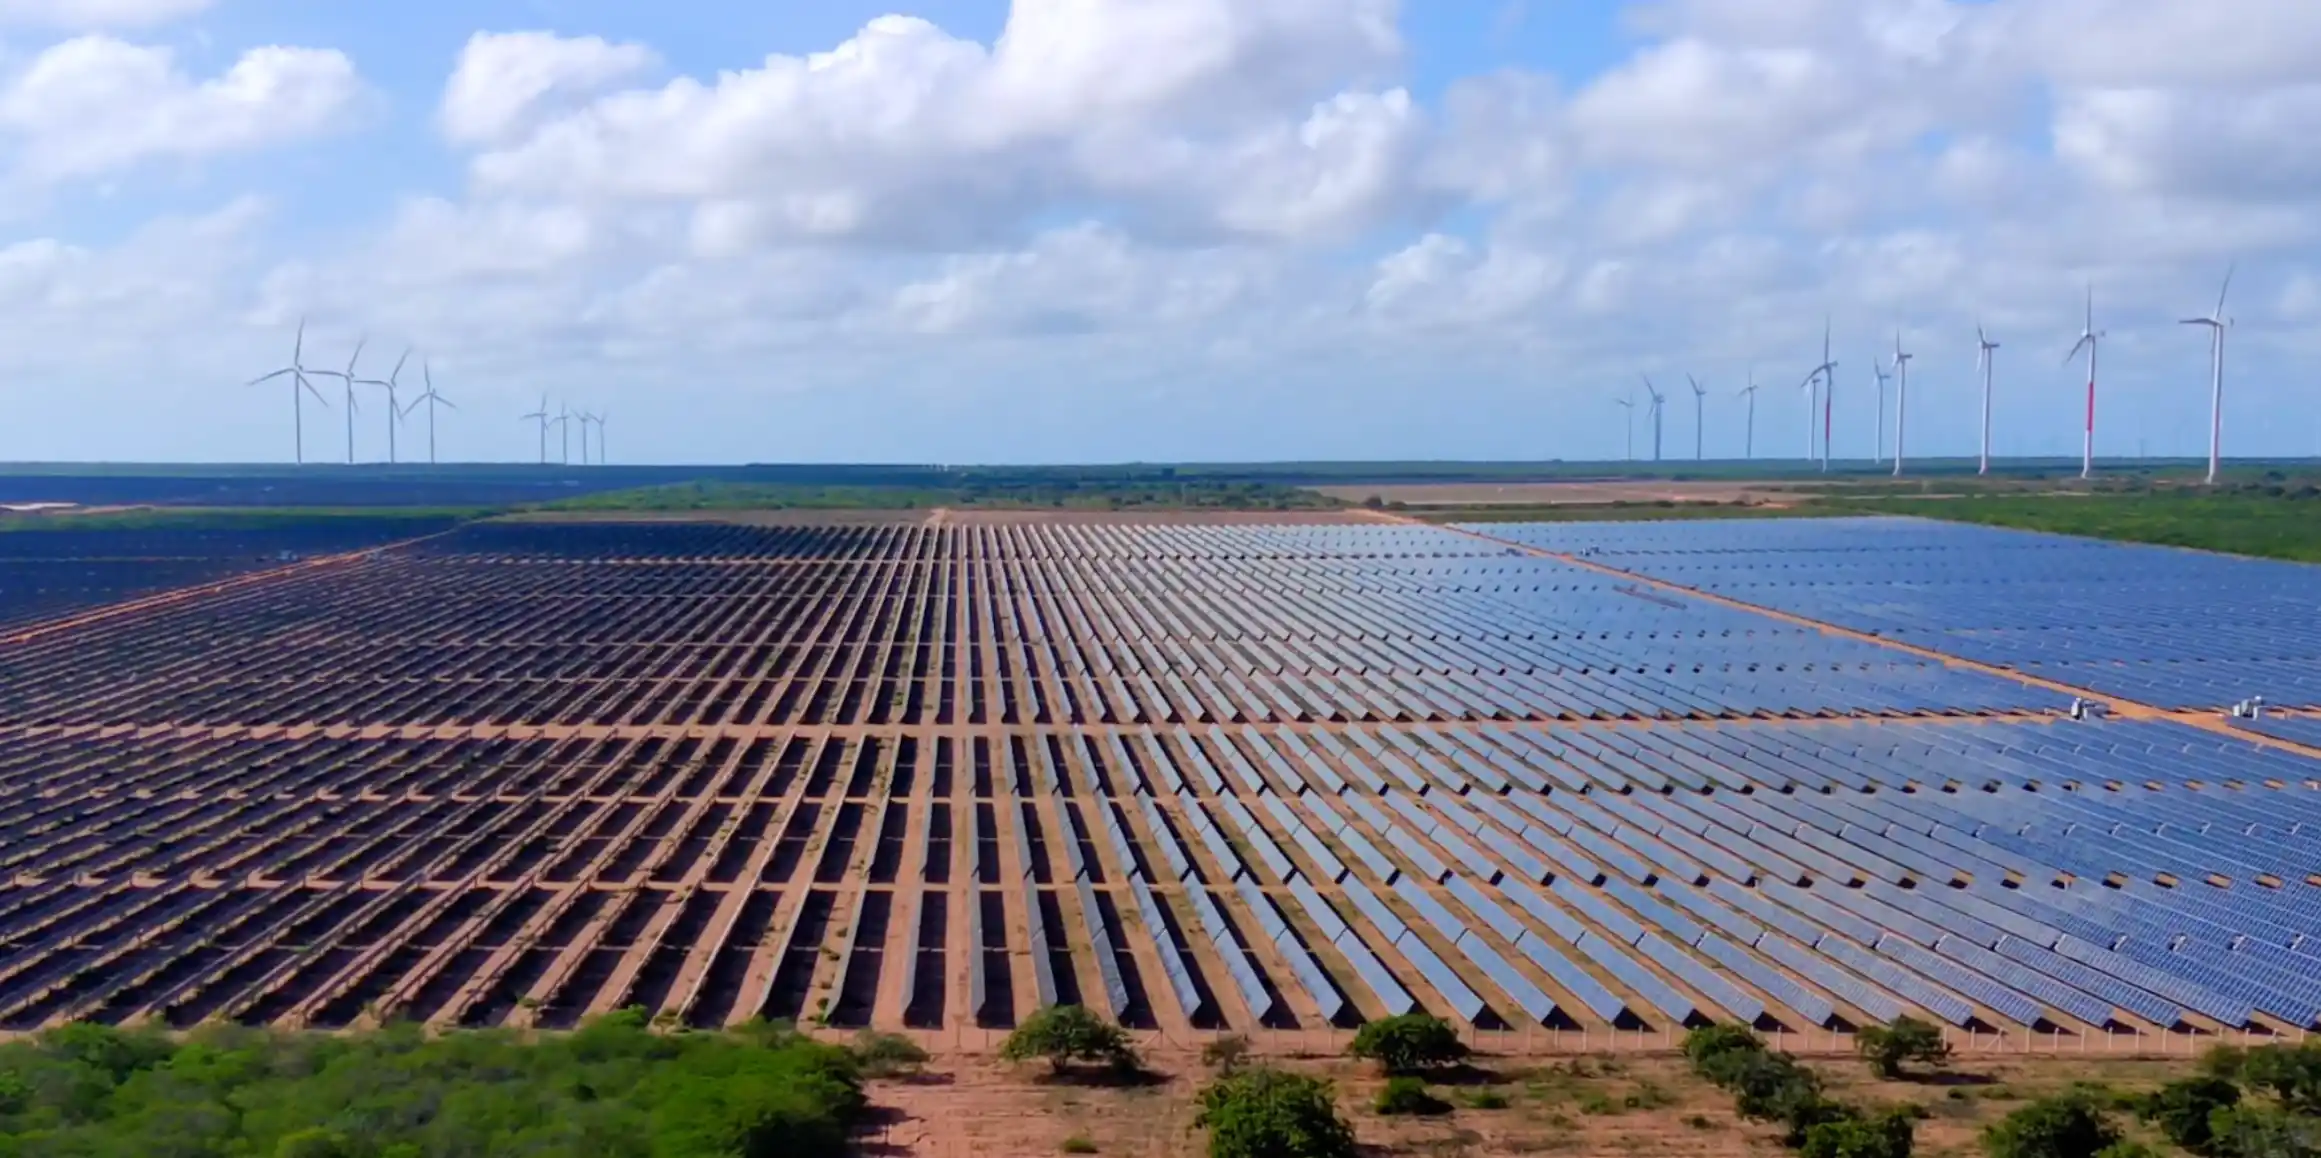 Usina solar fotovoltaica Serra do Mel da Voltalia, com turbinas eólicas ao fundo (Foto Divulgação)